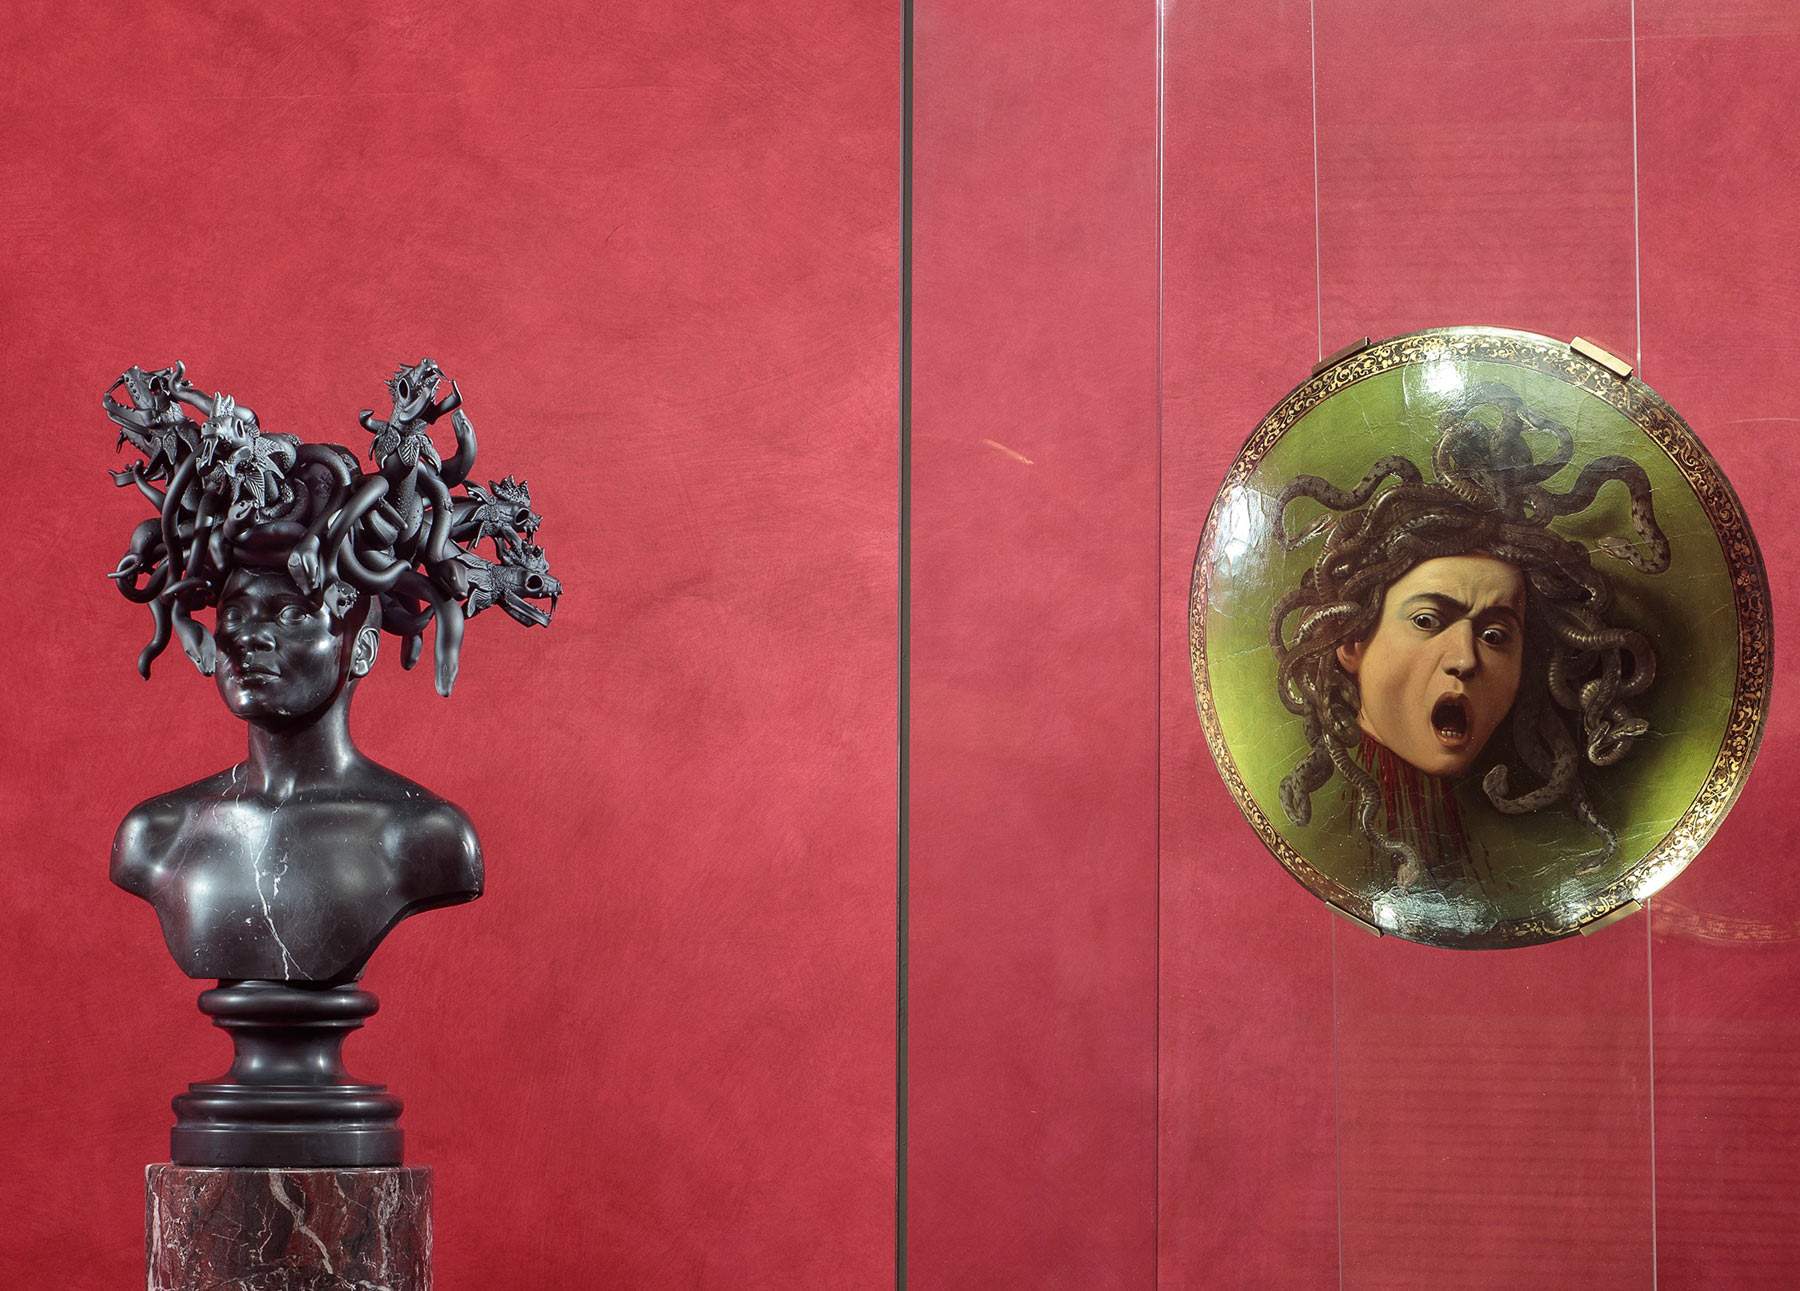 Uffizi, Koen Vanmechelen's fantastical creatures alongside the museum's classic masterpieces